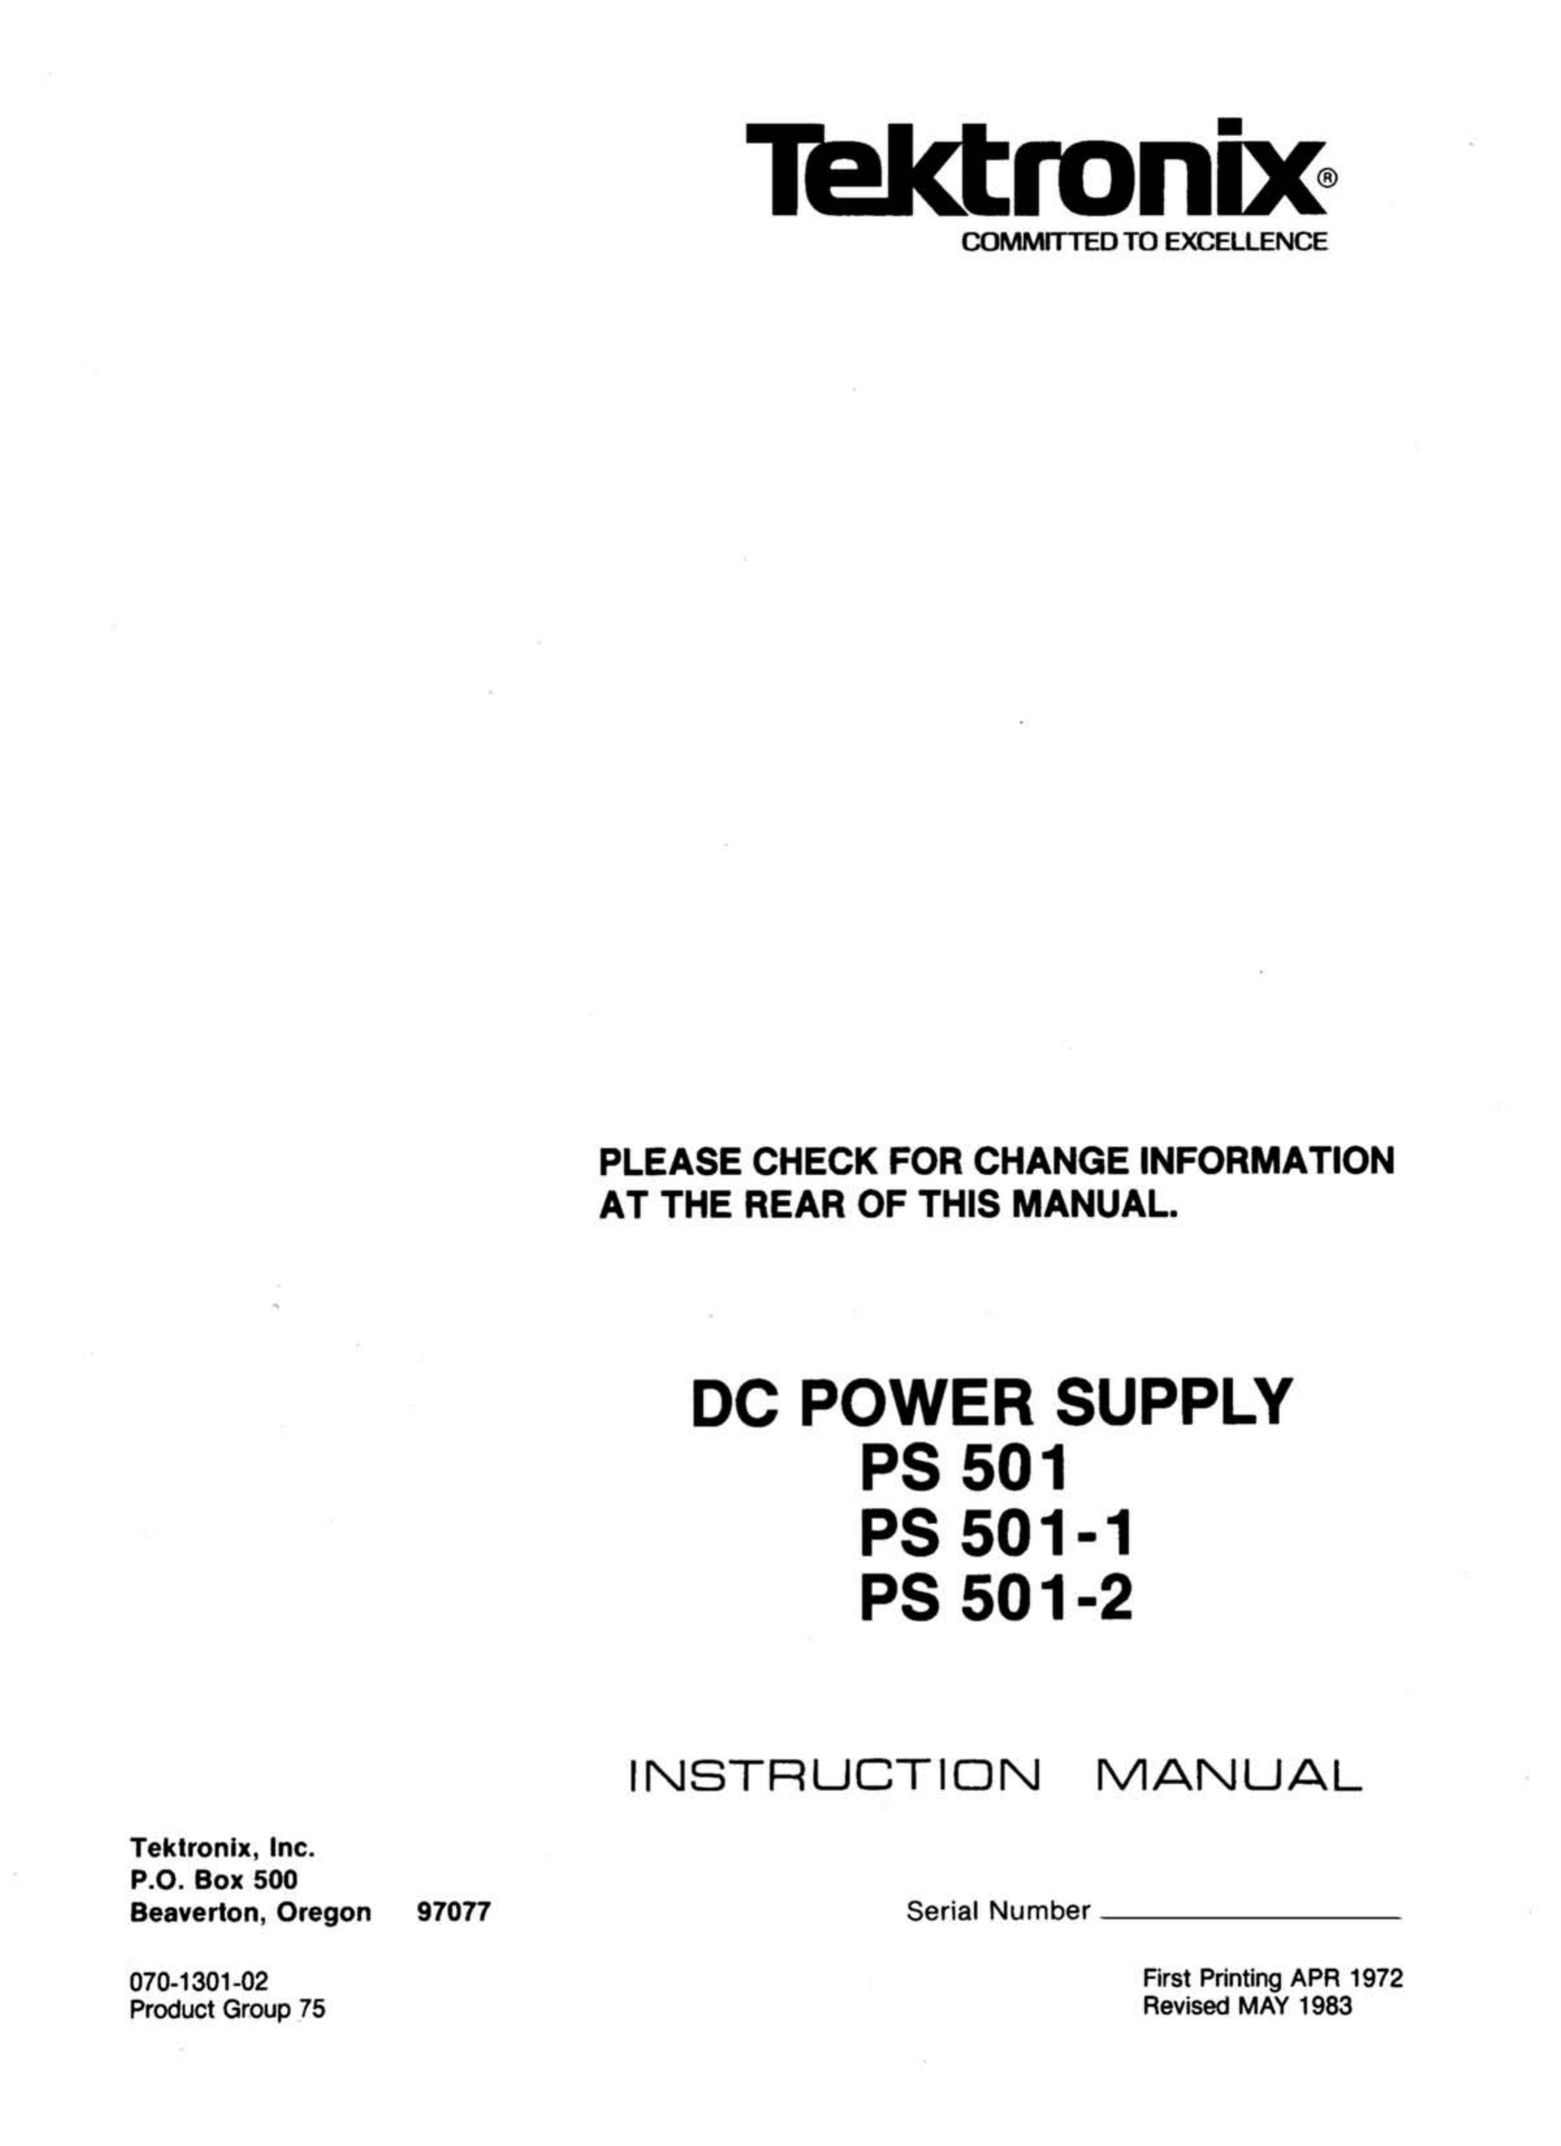 Tektronix 501-2 Power Supply User Manual